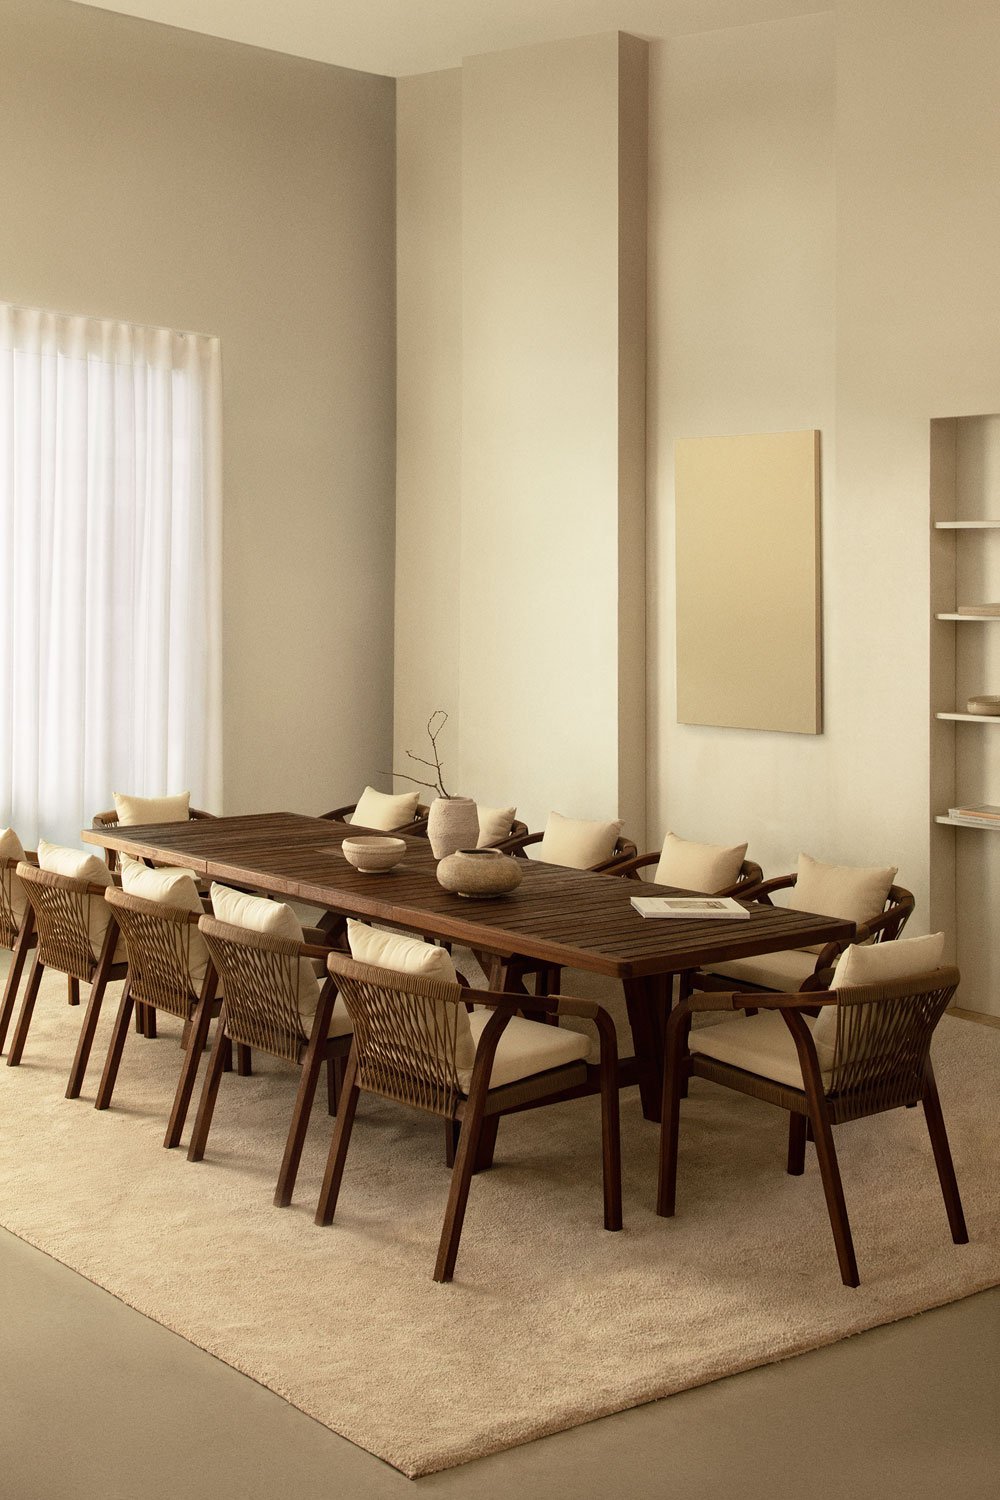 Rechthoekige uitschuifbare tafelset (200-300x100 cm) en 12 eetkamerstoelen met armleuningen in Dubai acaciahout , galerij beeld 1